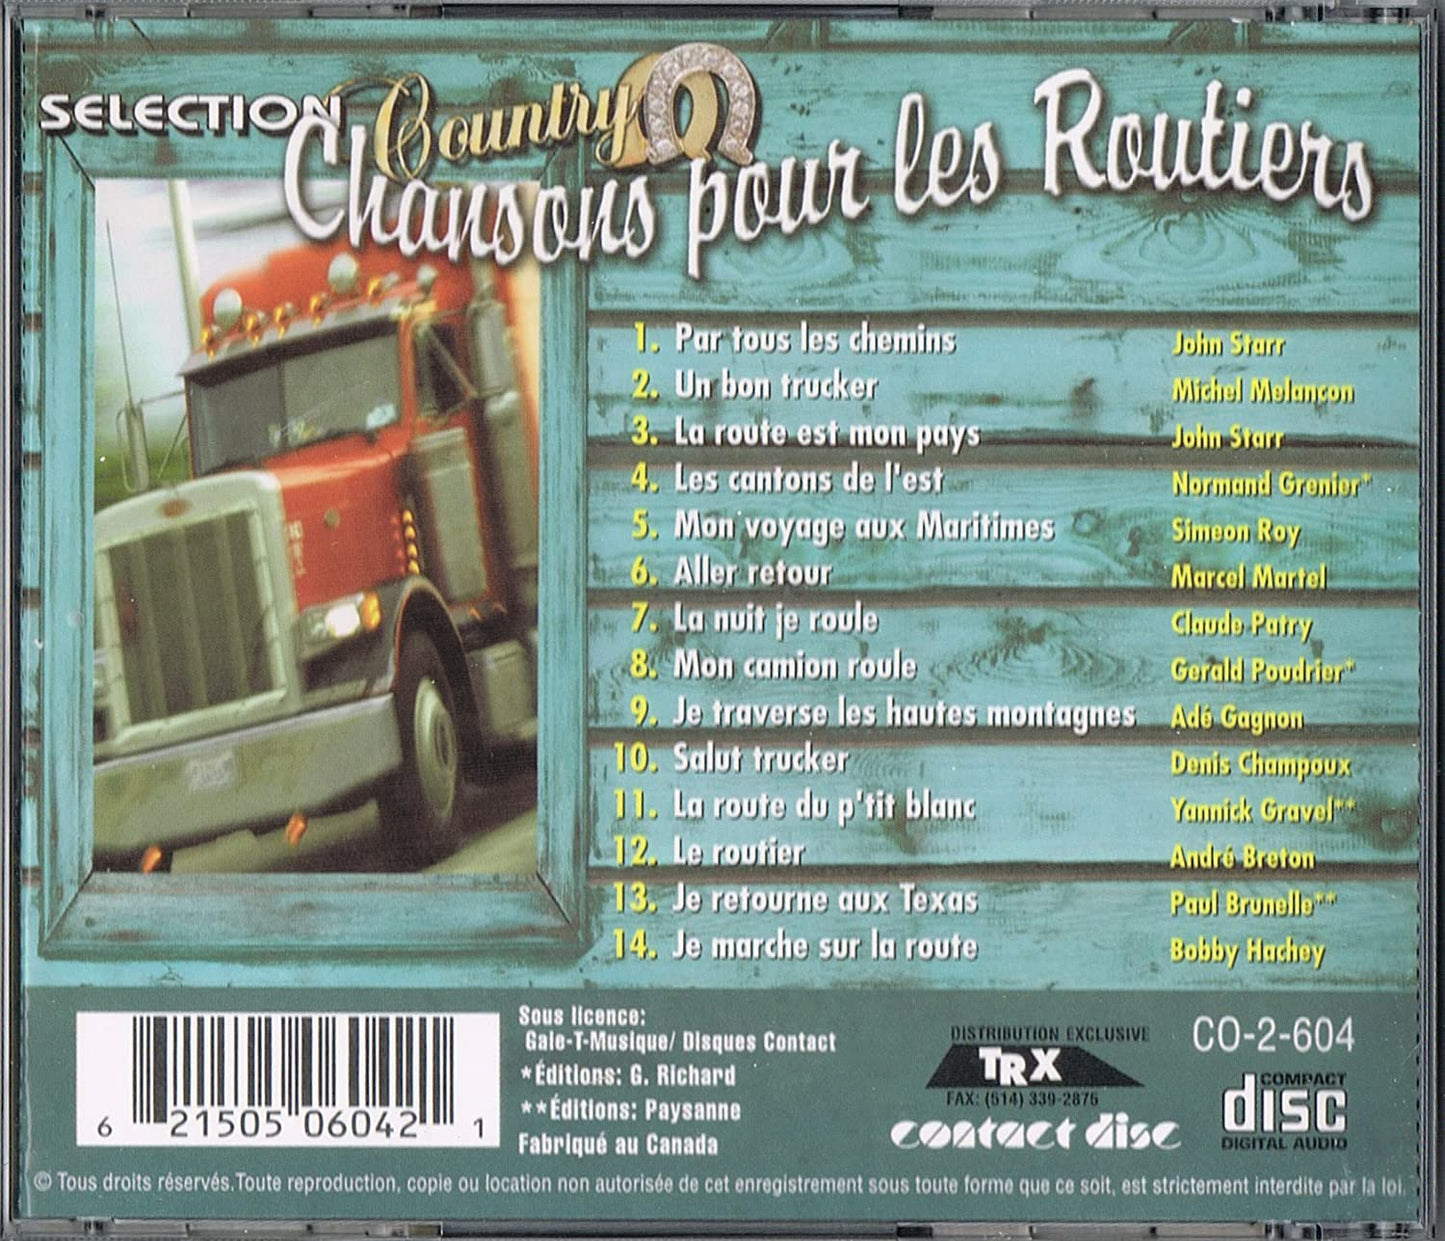 Chansons Pour Les Routiers - Selection Country/ 14 succes [Audio CD] Artistes Variés